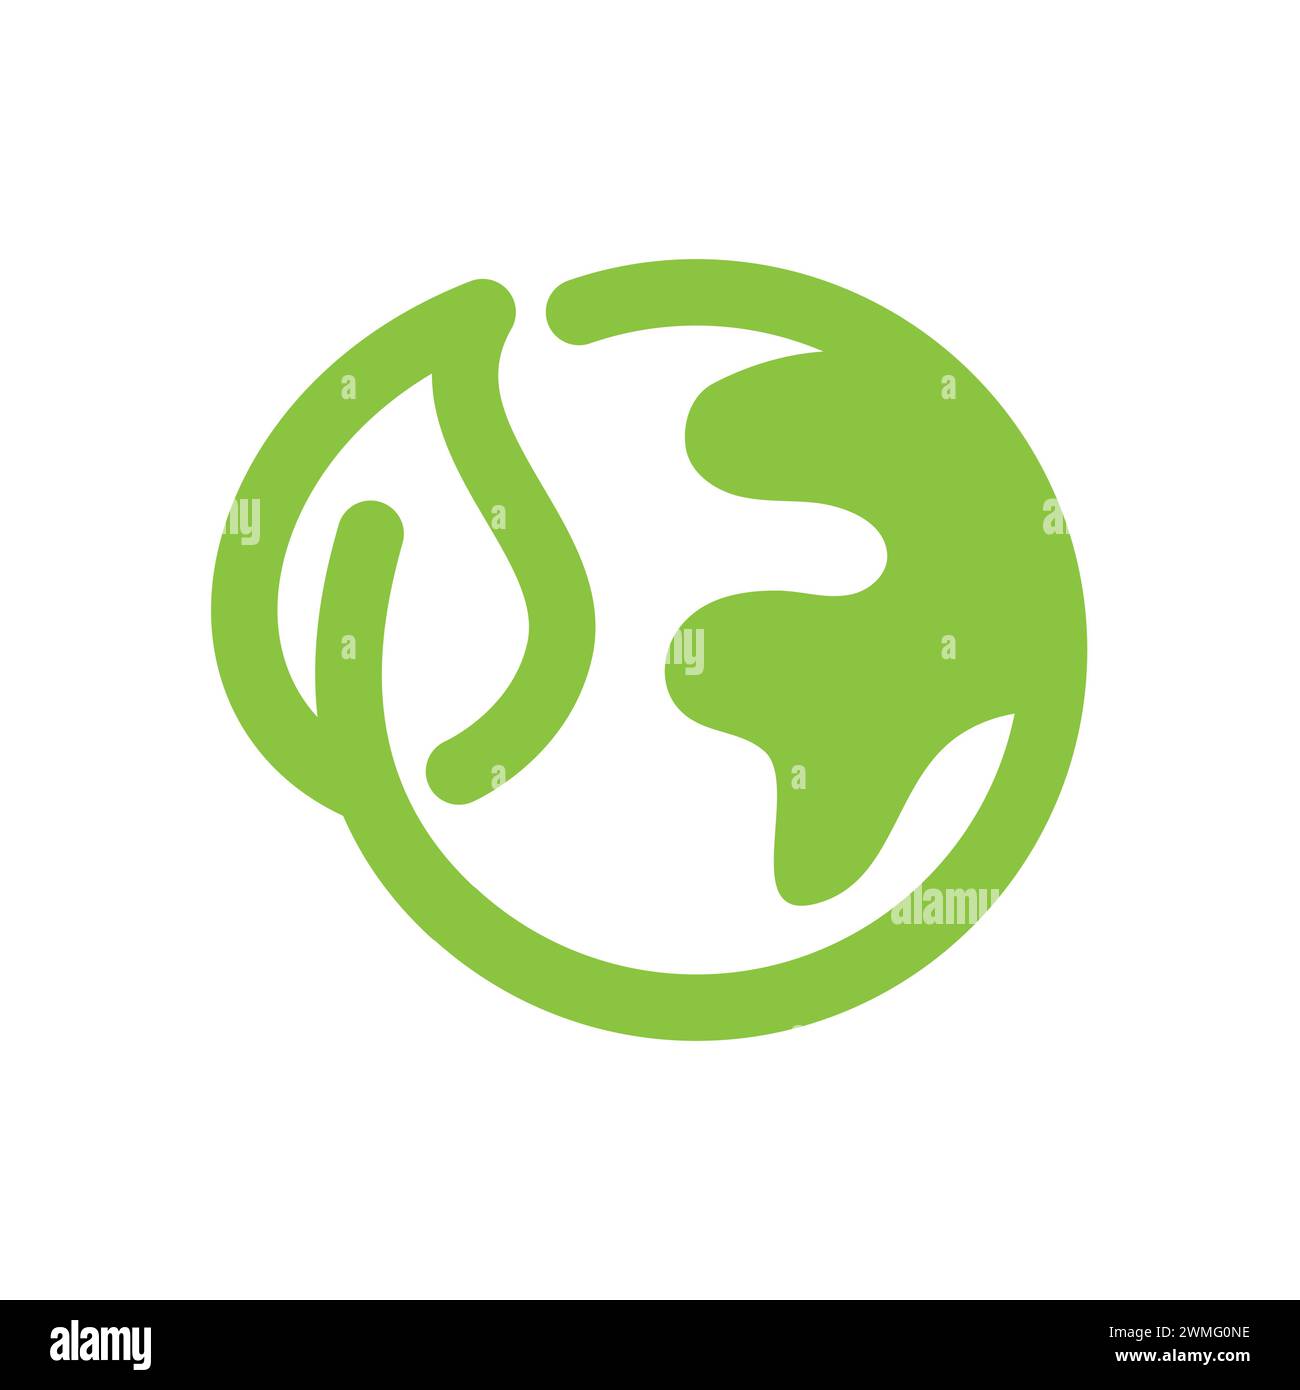 Pianeta Terra con icona del vettore lamellare. Simbolo ecologico, ecologico ed ecologico. Illustrazione Vettoriale